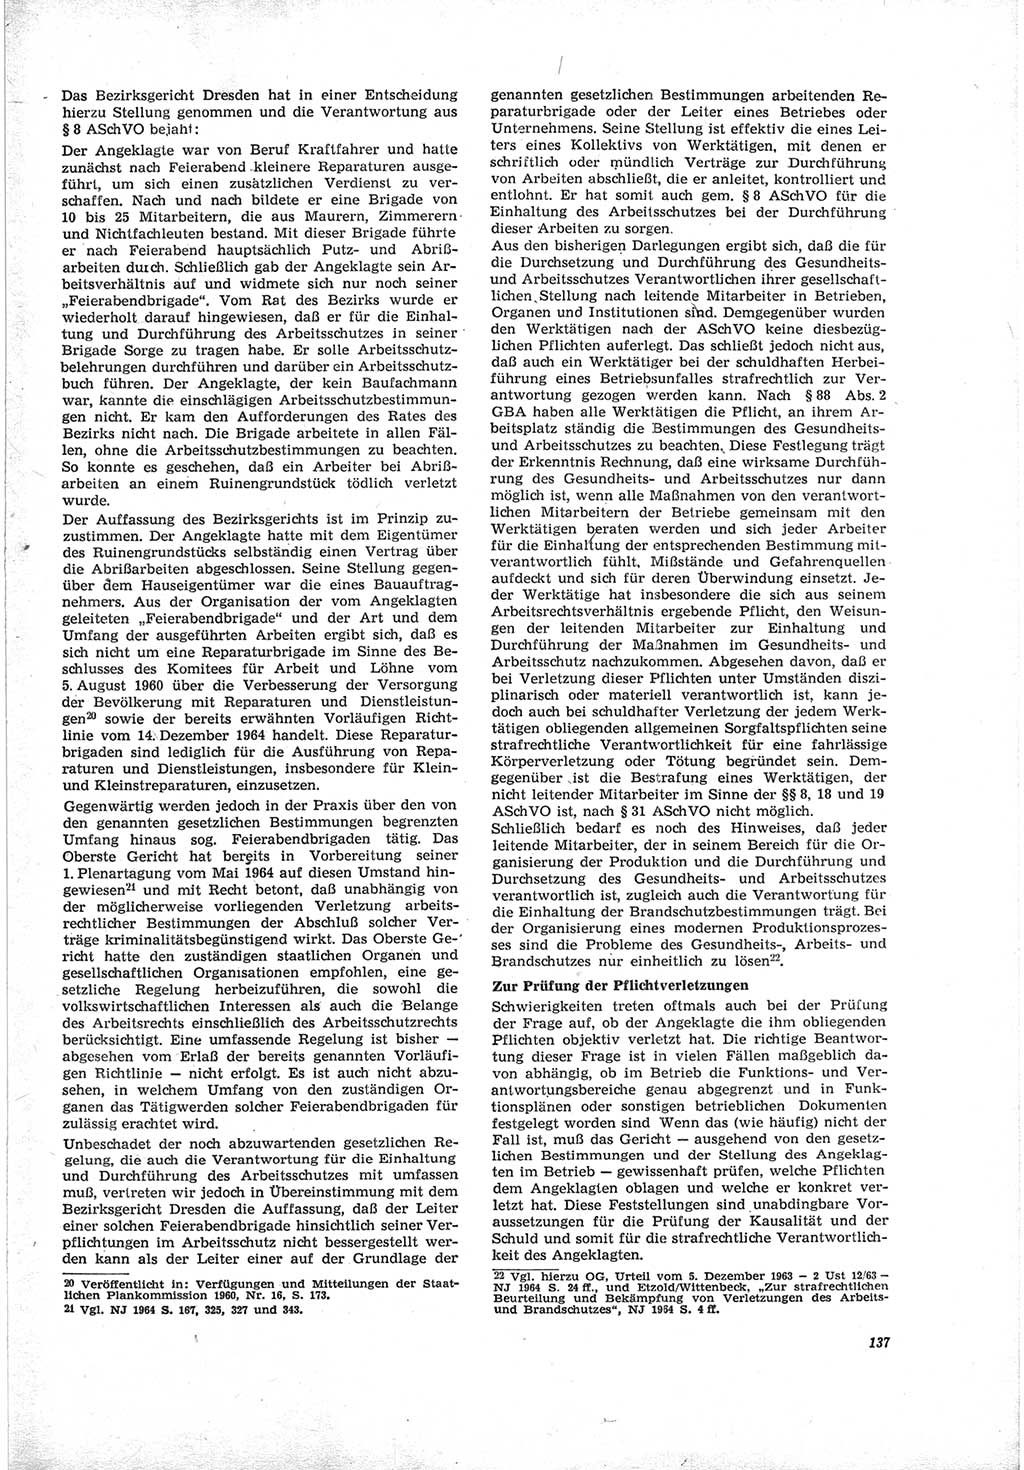 Neue Justiz (NJ), Zeitschrift für Recht und Rechtswissenschaft [Deutsche Demokratische Republik (DDR)], 19. Jahrgang 1965, Seite 137 (NJ DDR 1965, S. 137)